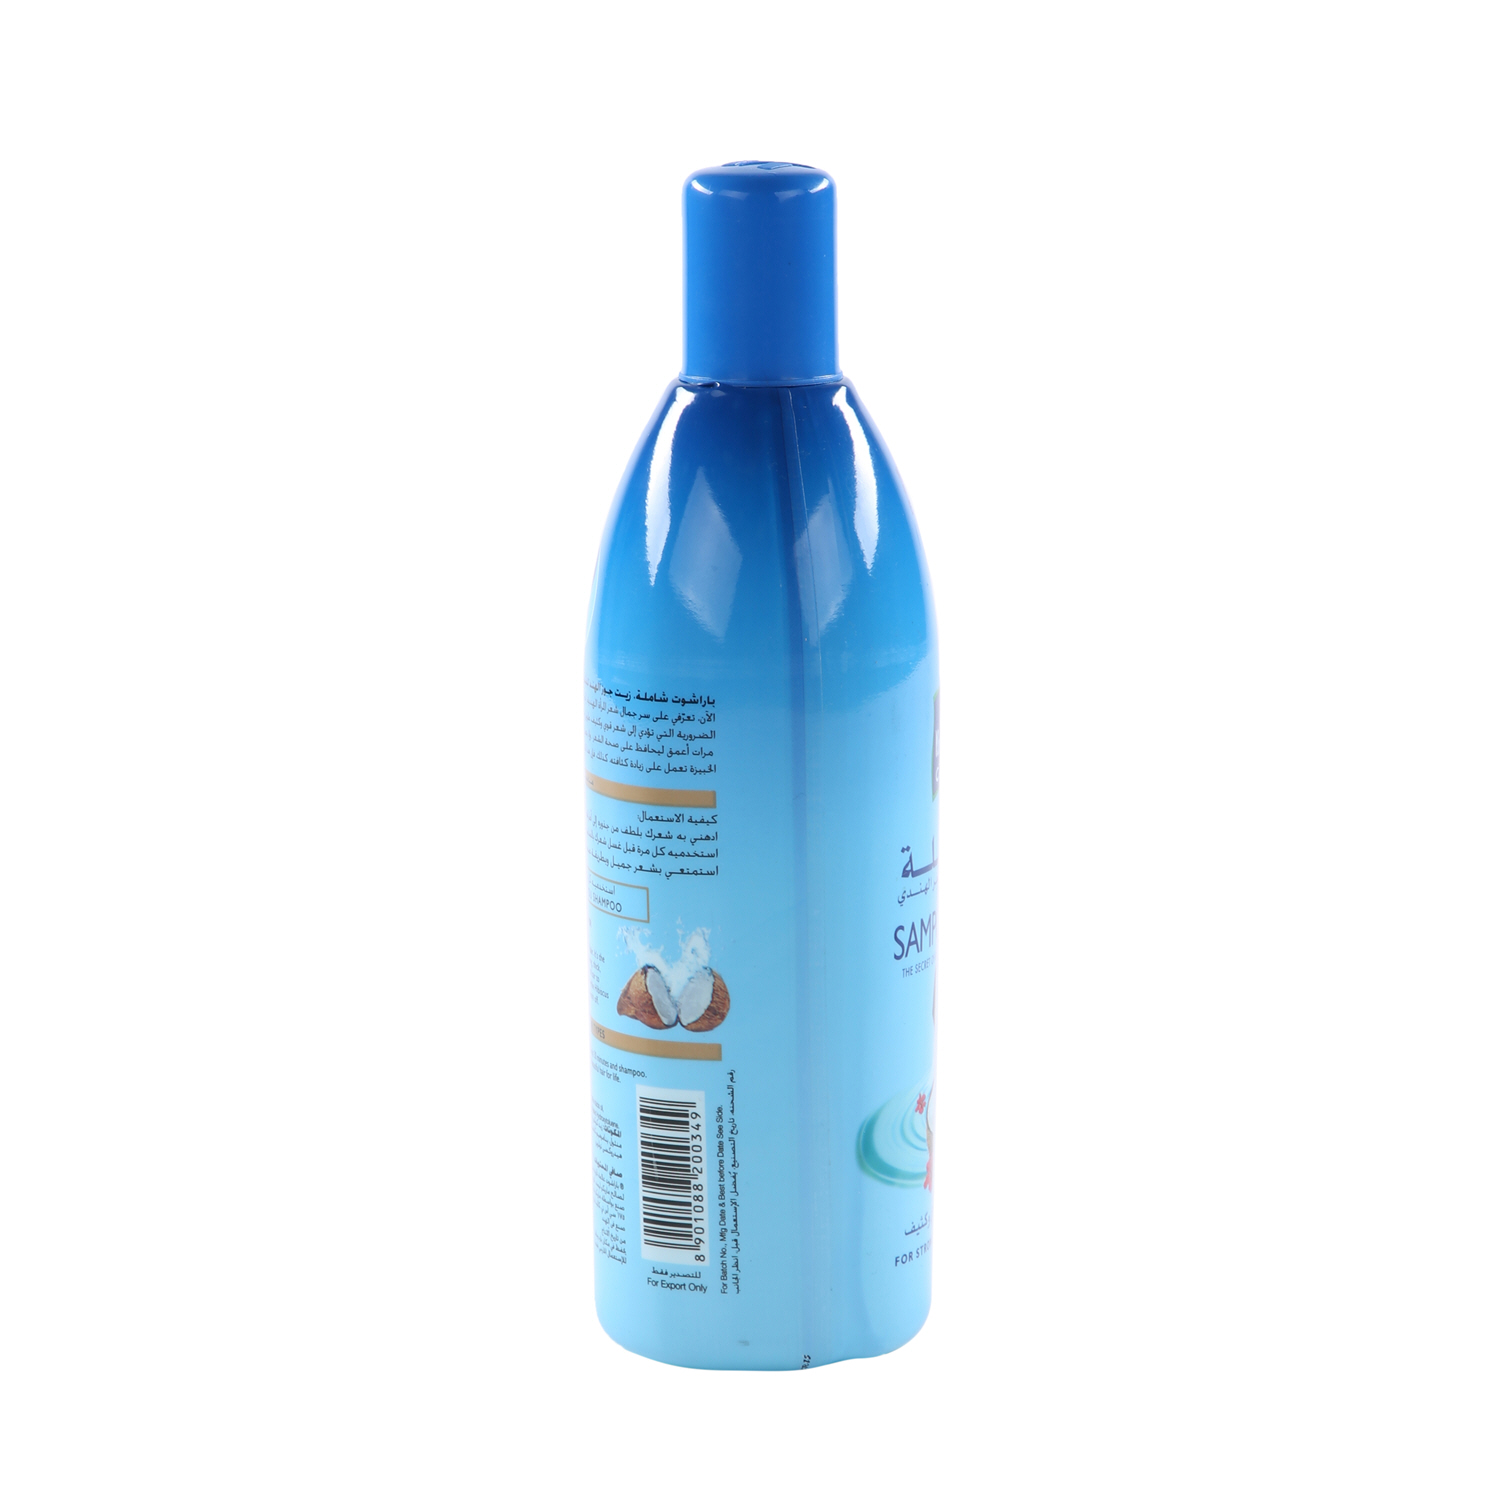 Parachute Sampoorna Hair Oil 300 ml